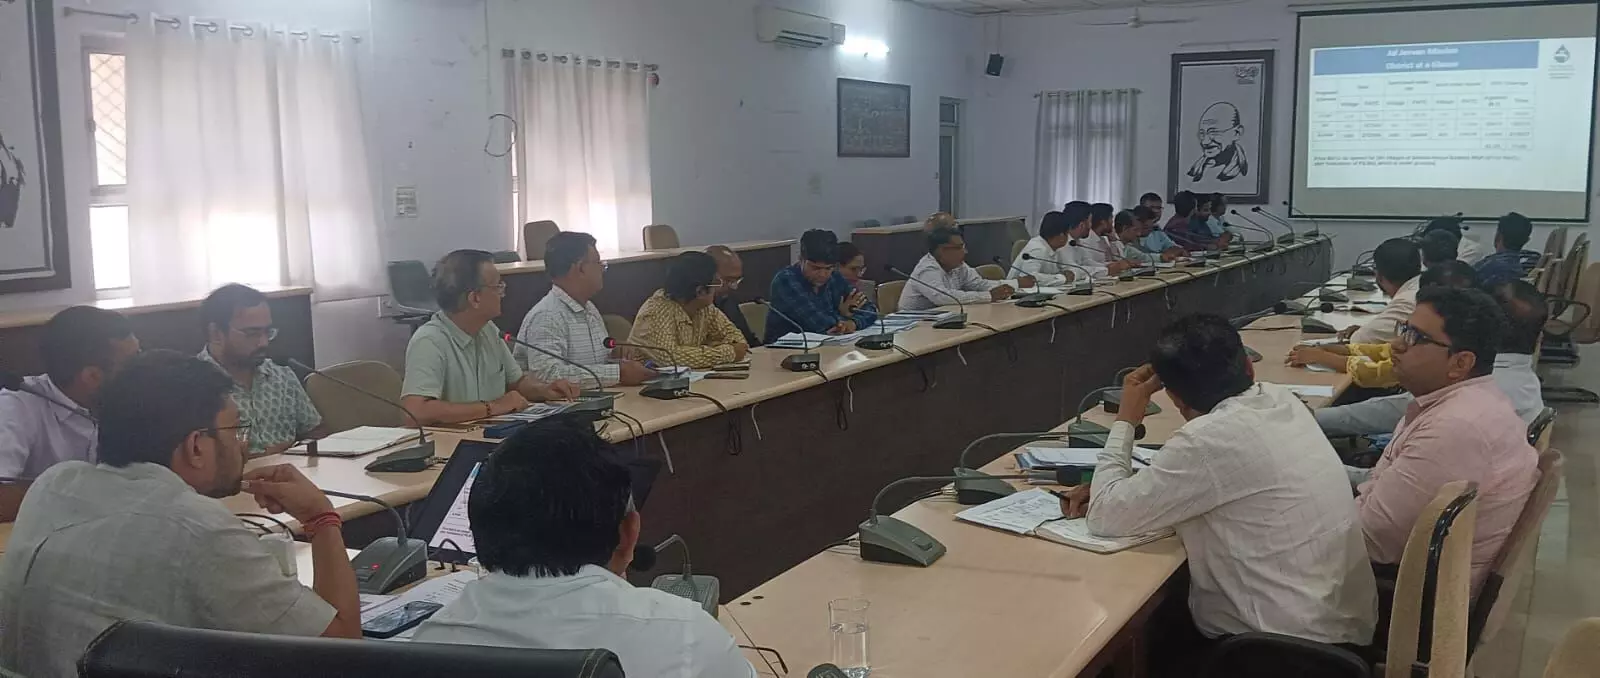 Bhilwara : जिला जल एवं स्वच्छता समिति की मासिक समीक्षा बैठक आयोजित